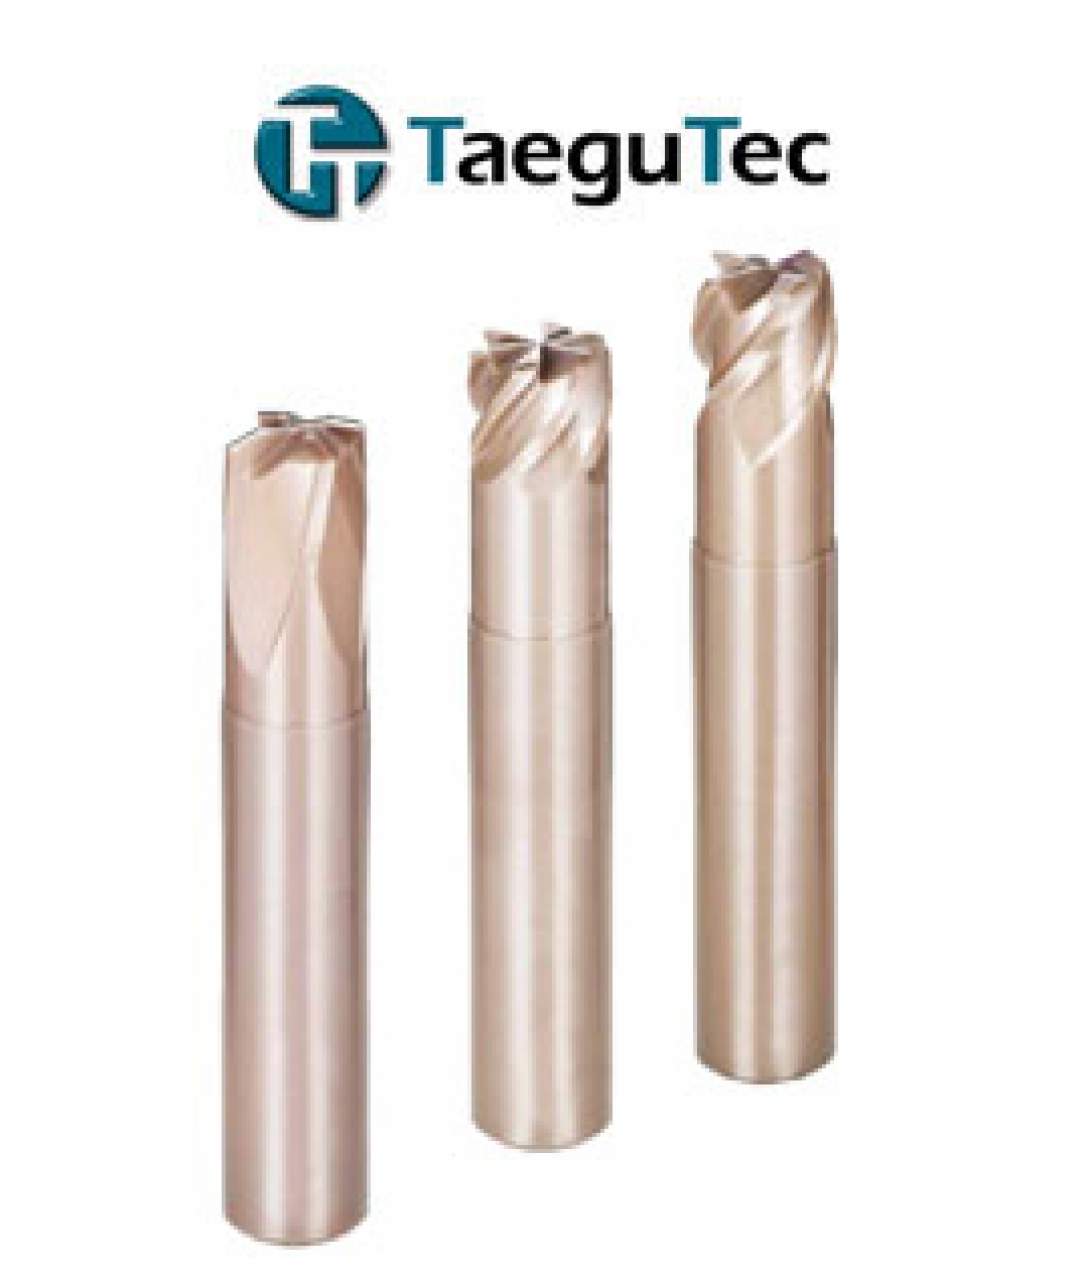 TaeguTec CeramicSfeed integrale